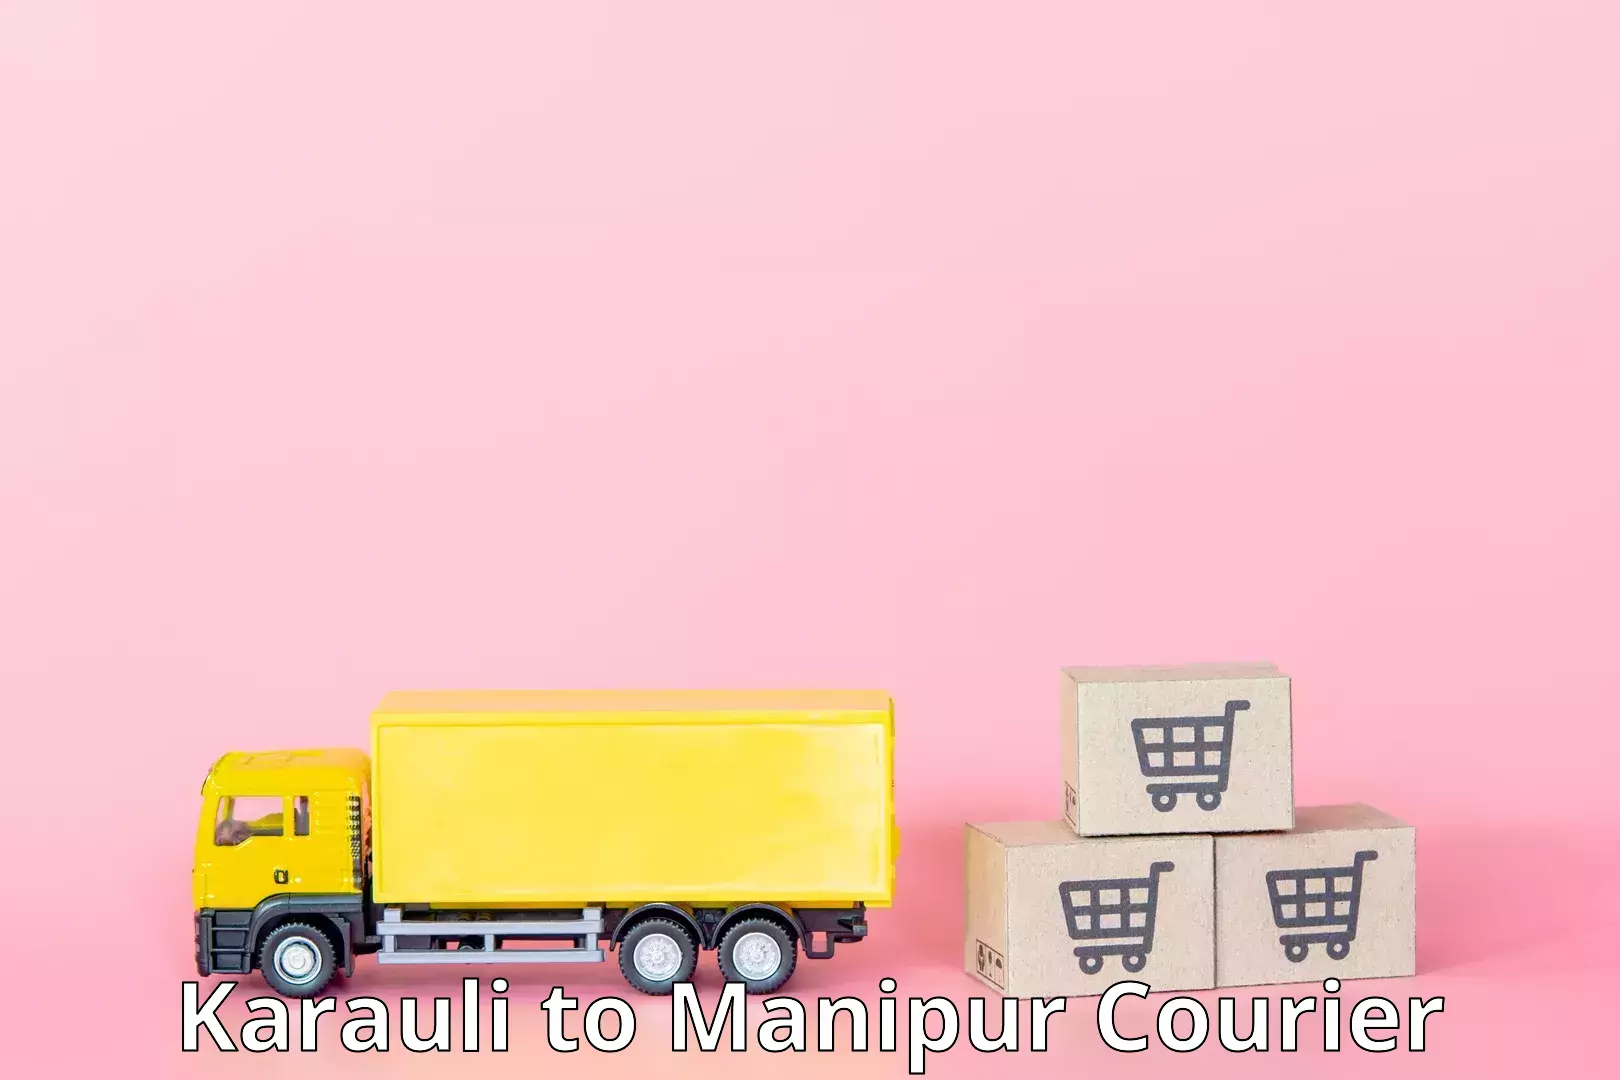 Urban courier service Karauli to Moirang